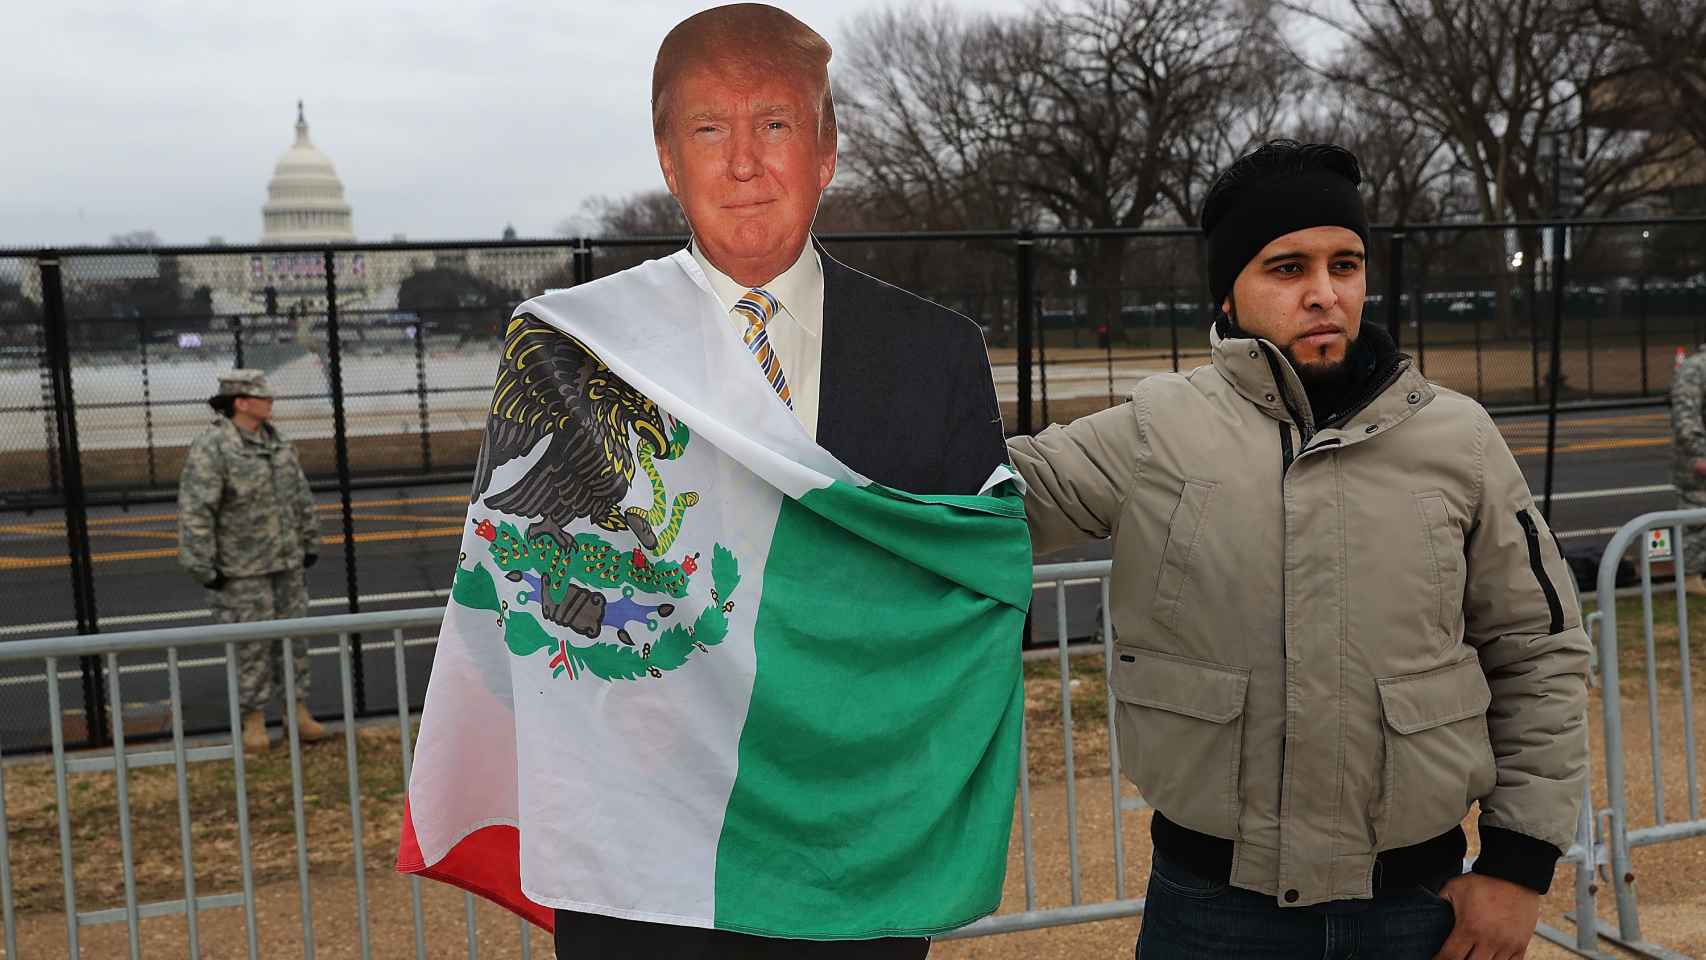 Un activista mexicano pone la bandera de su país sobre una figura de Trump el día de su investidura.